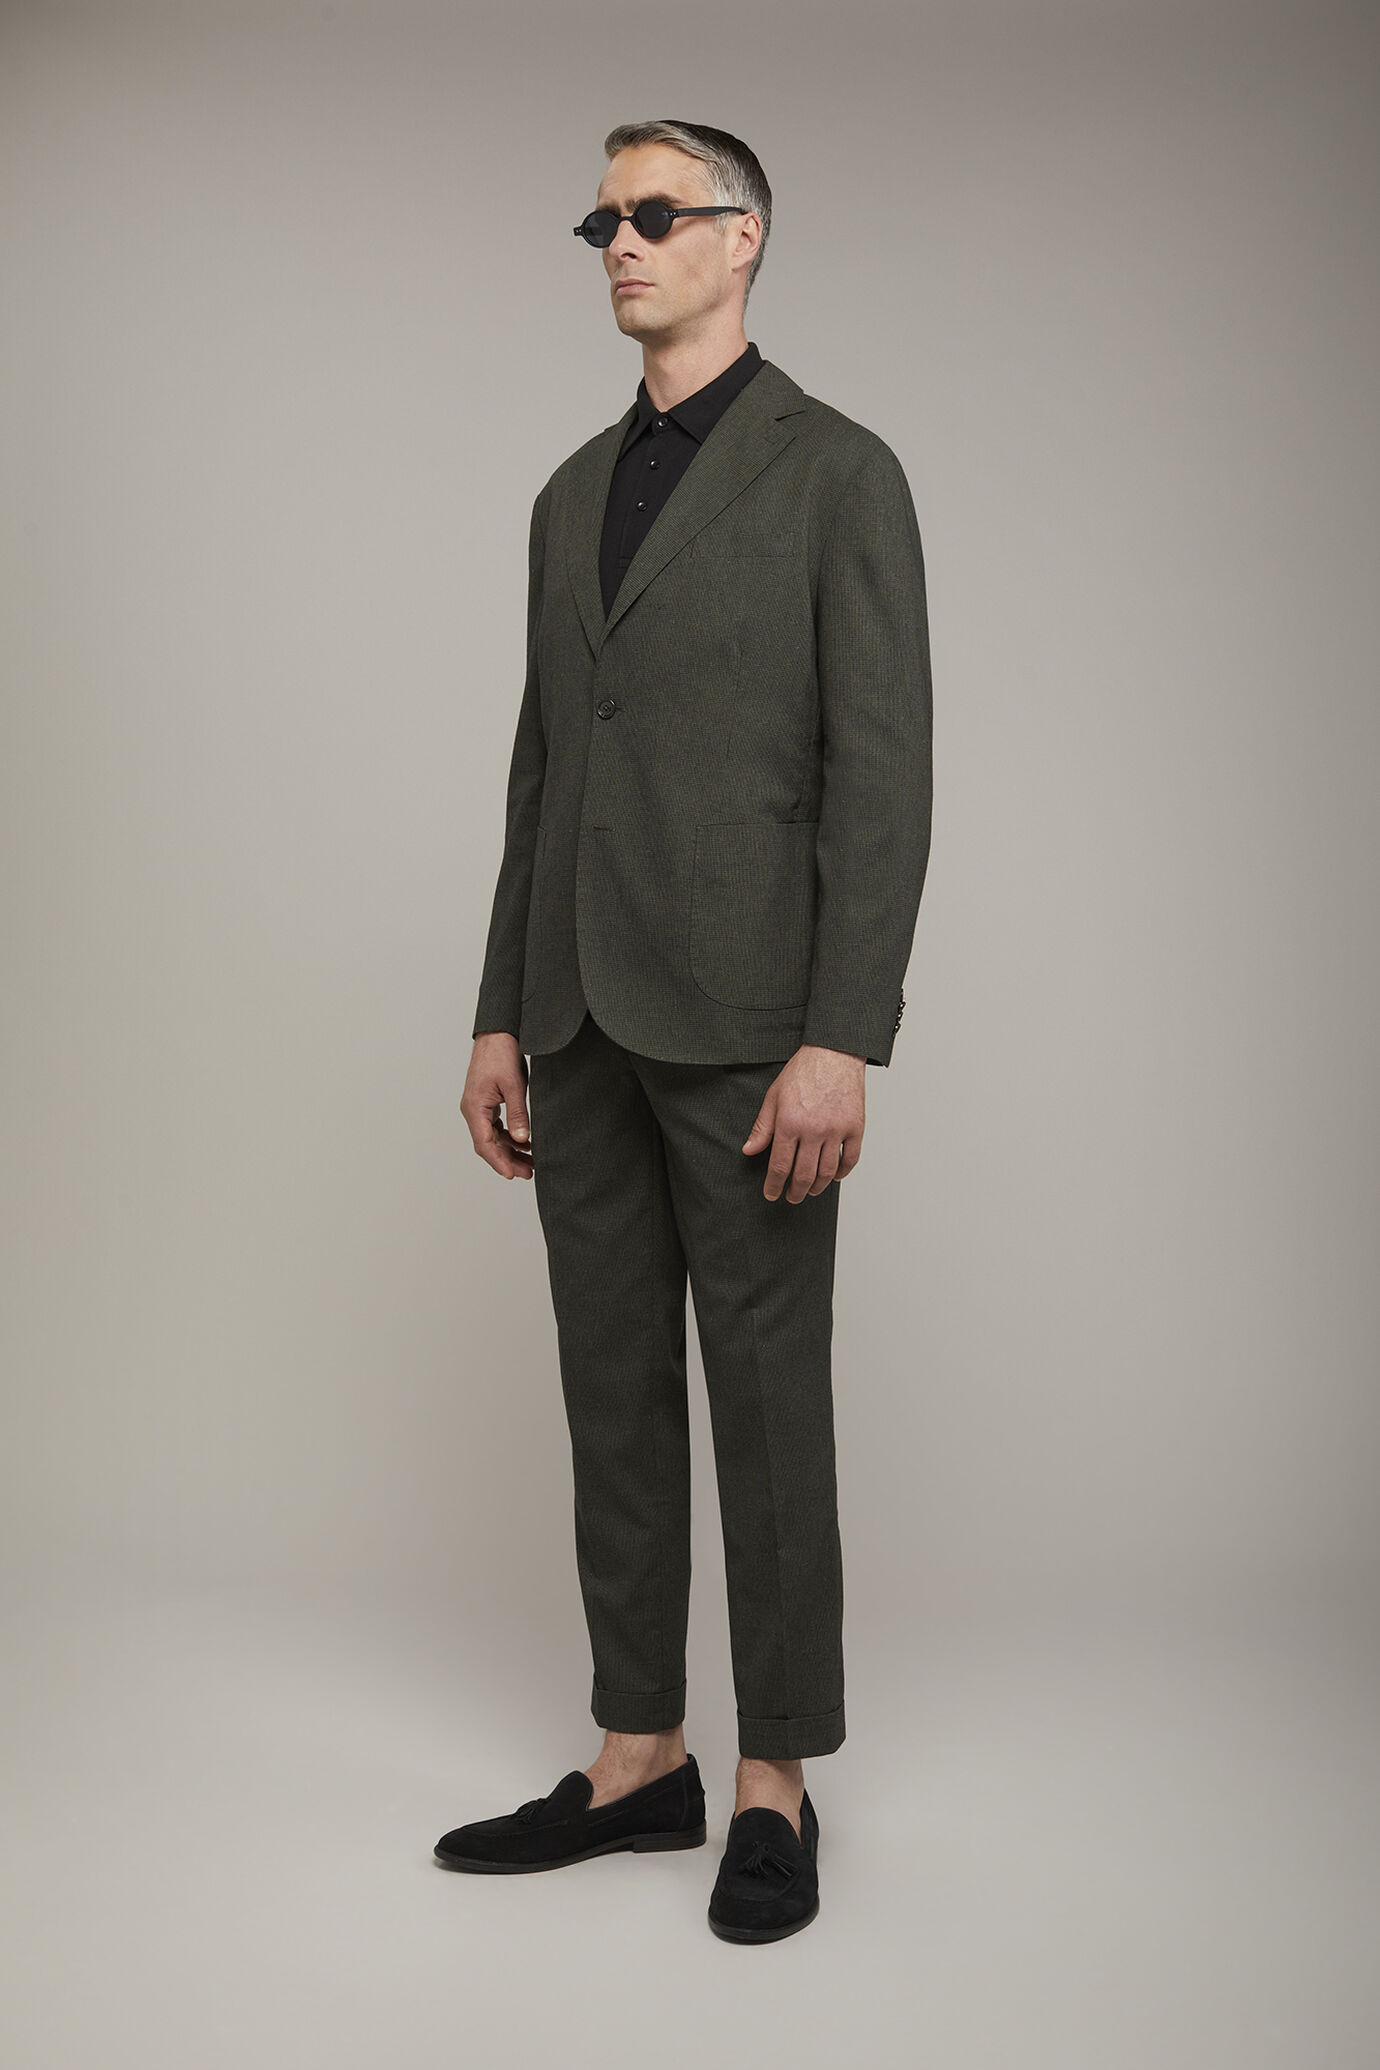 Pantalon homme classique à double pince, tissu avec motif micro pied-de-poule coupe régulière image number 1